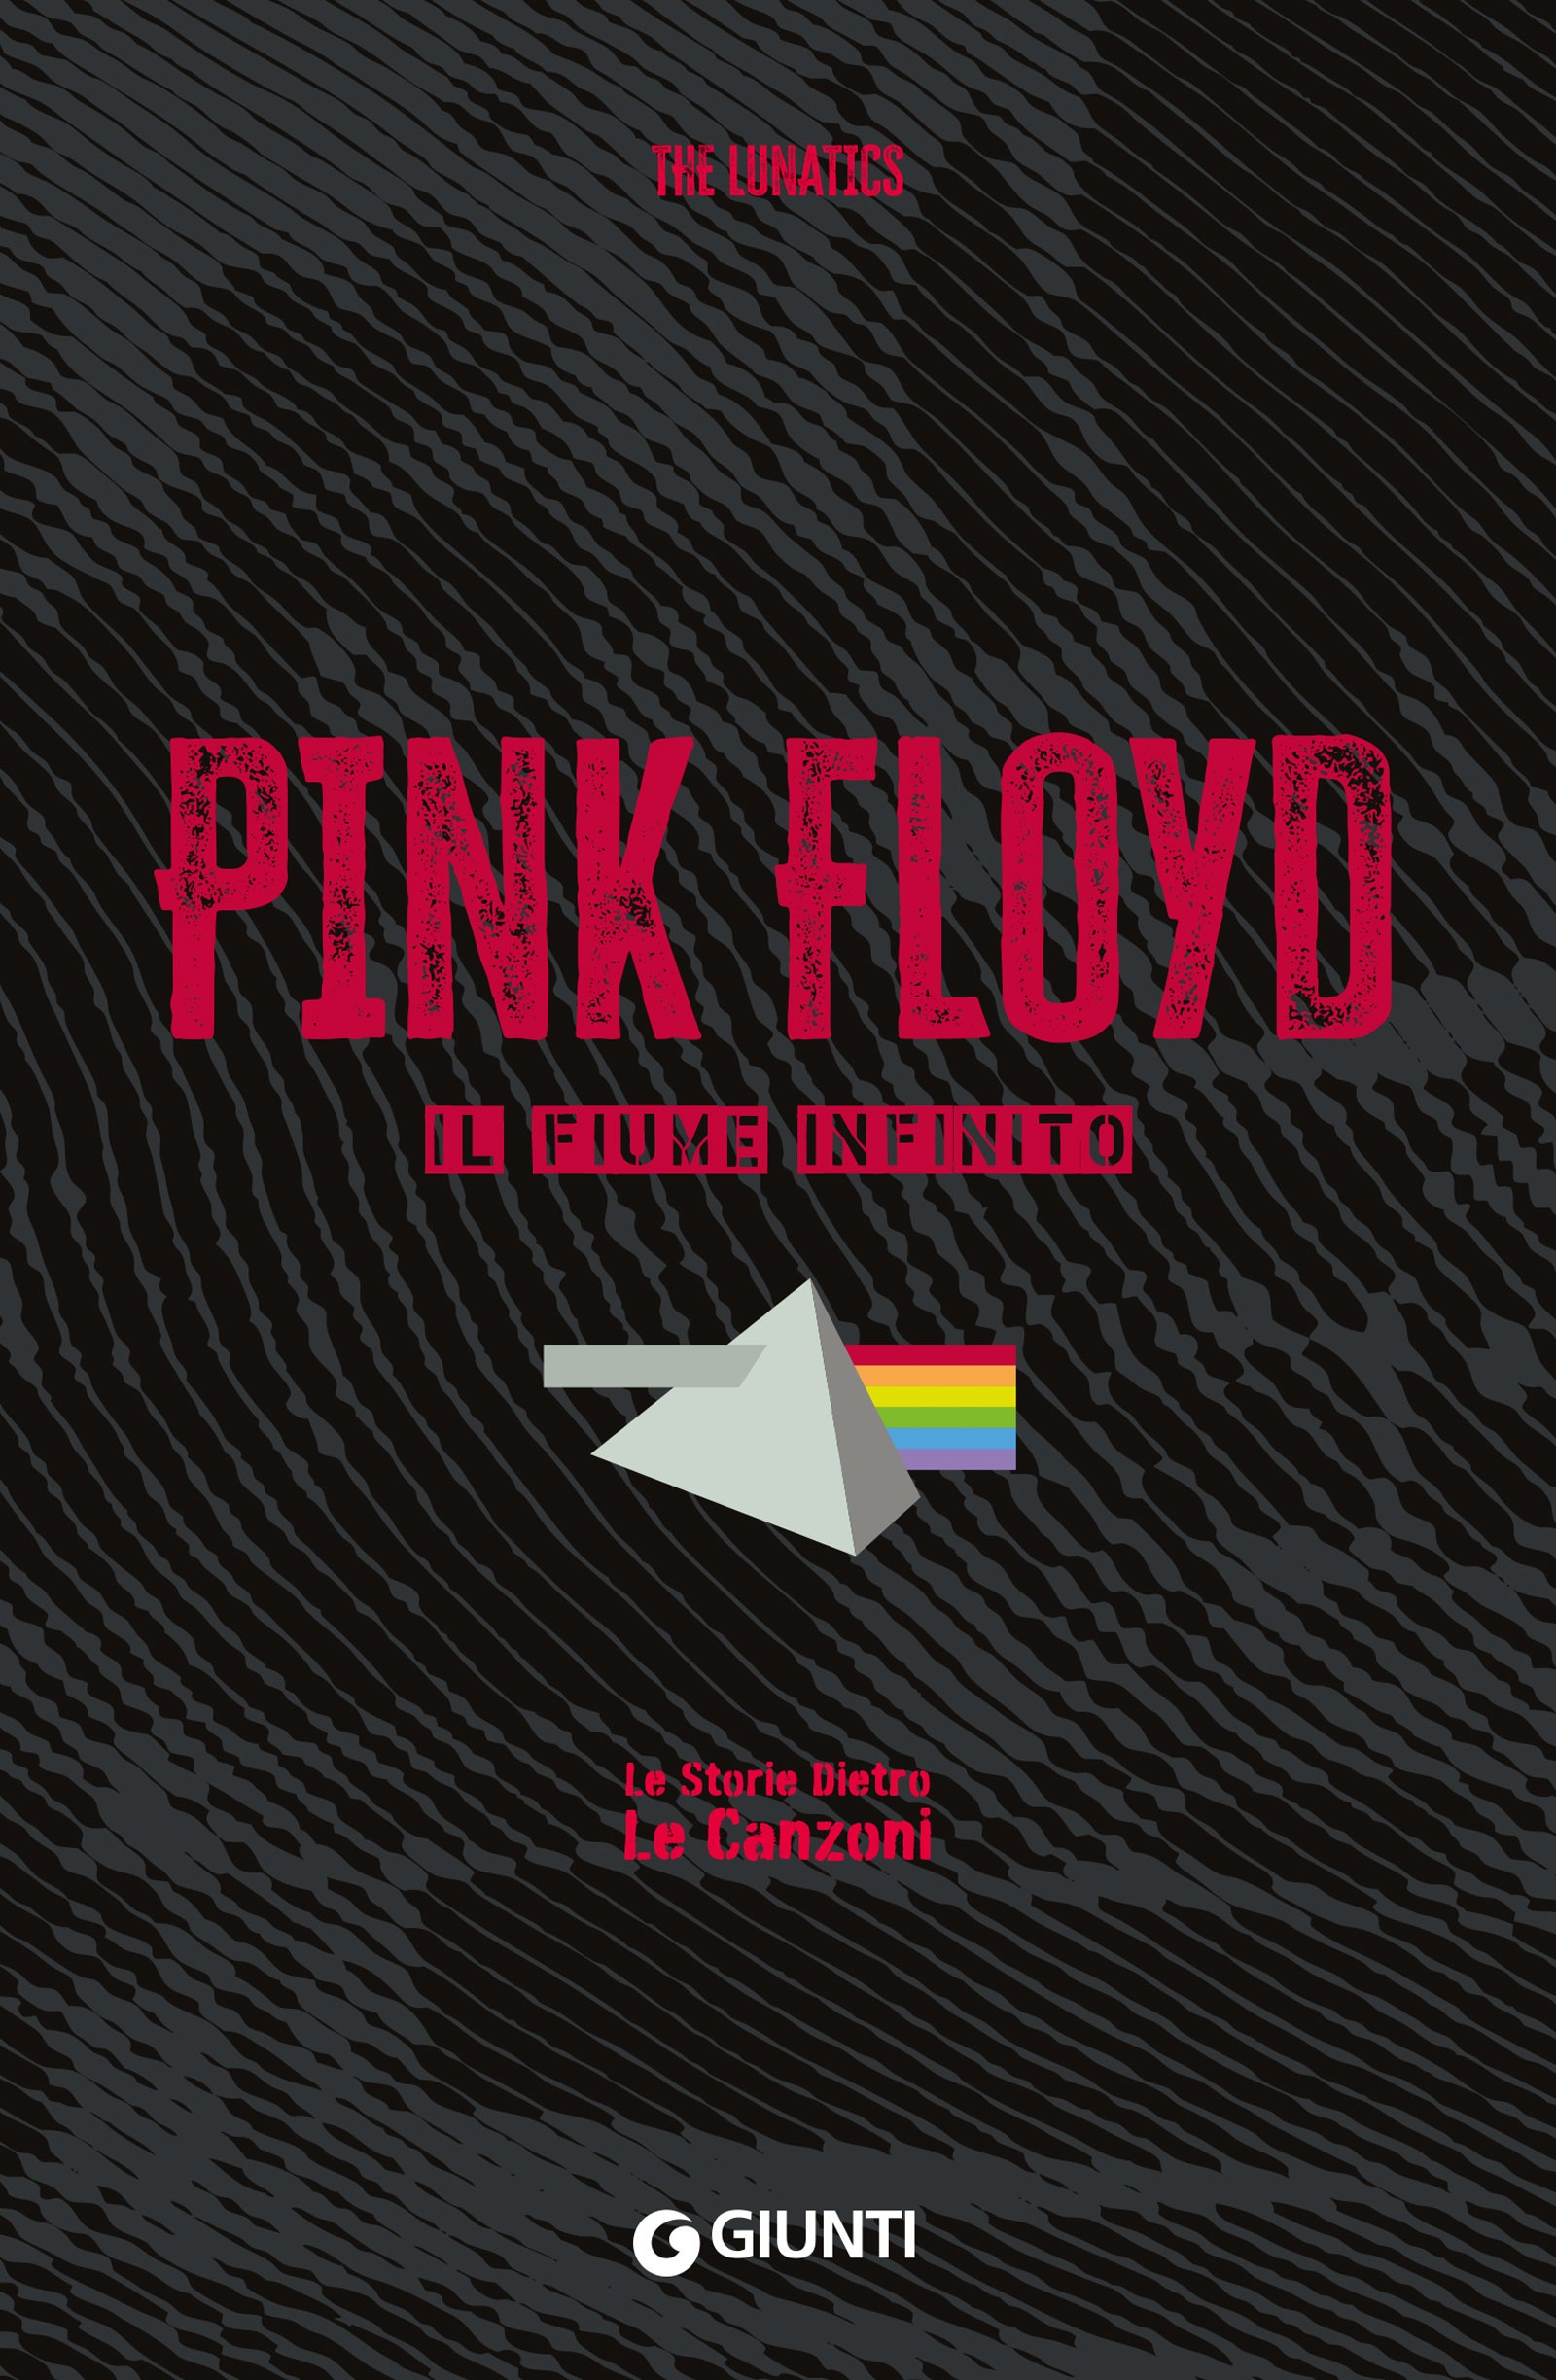 Pink Floyd - Librerie.coop